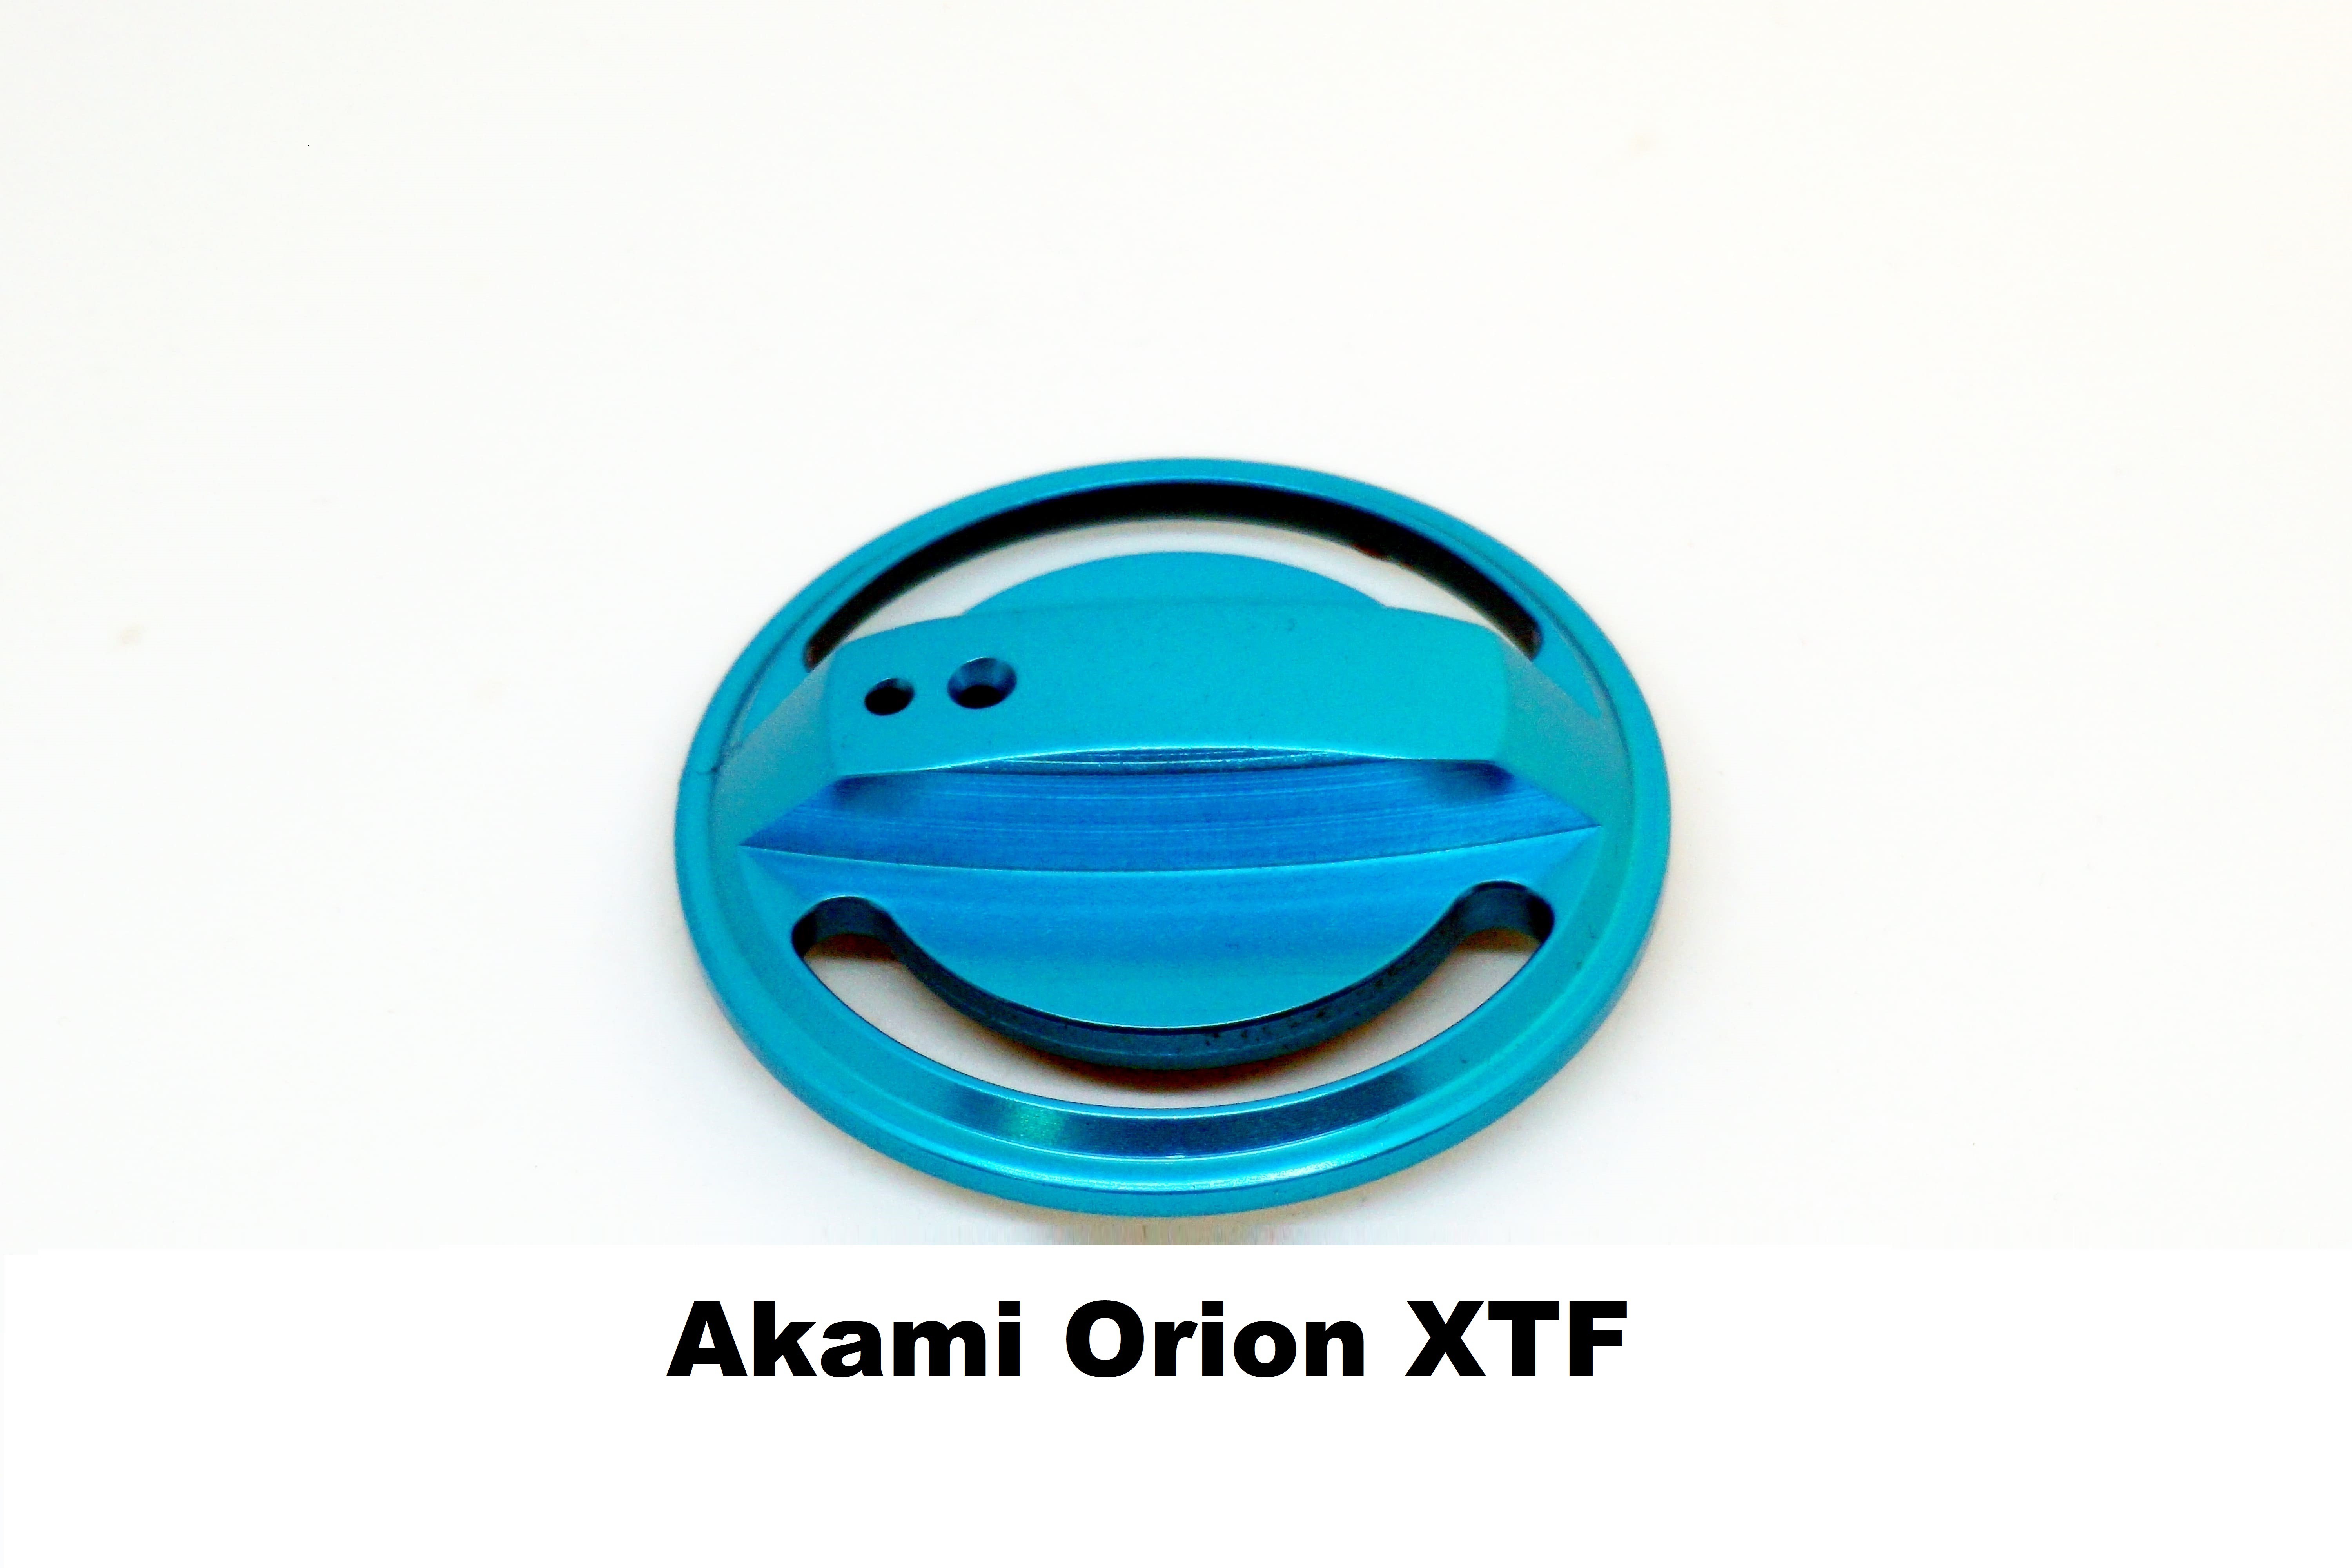 Spina del Freno Akami Orion XTF